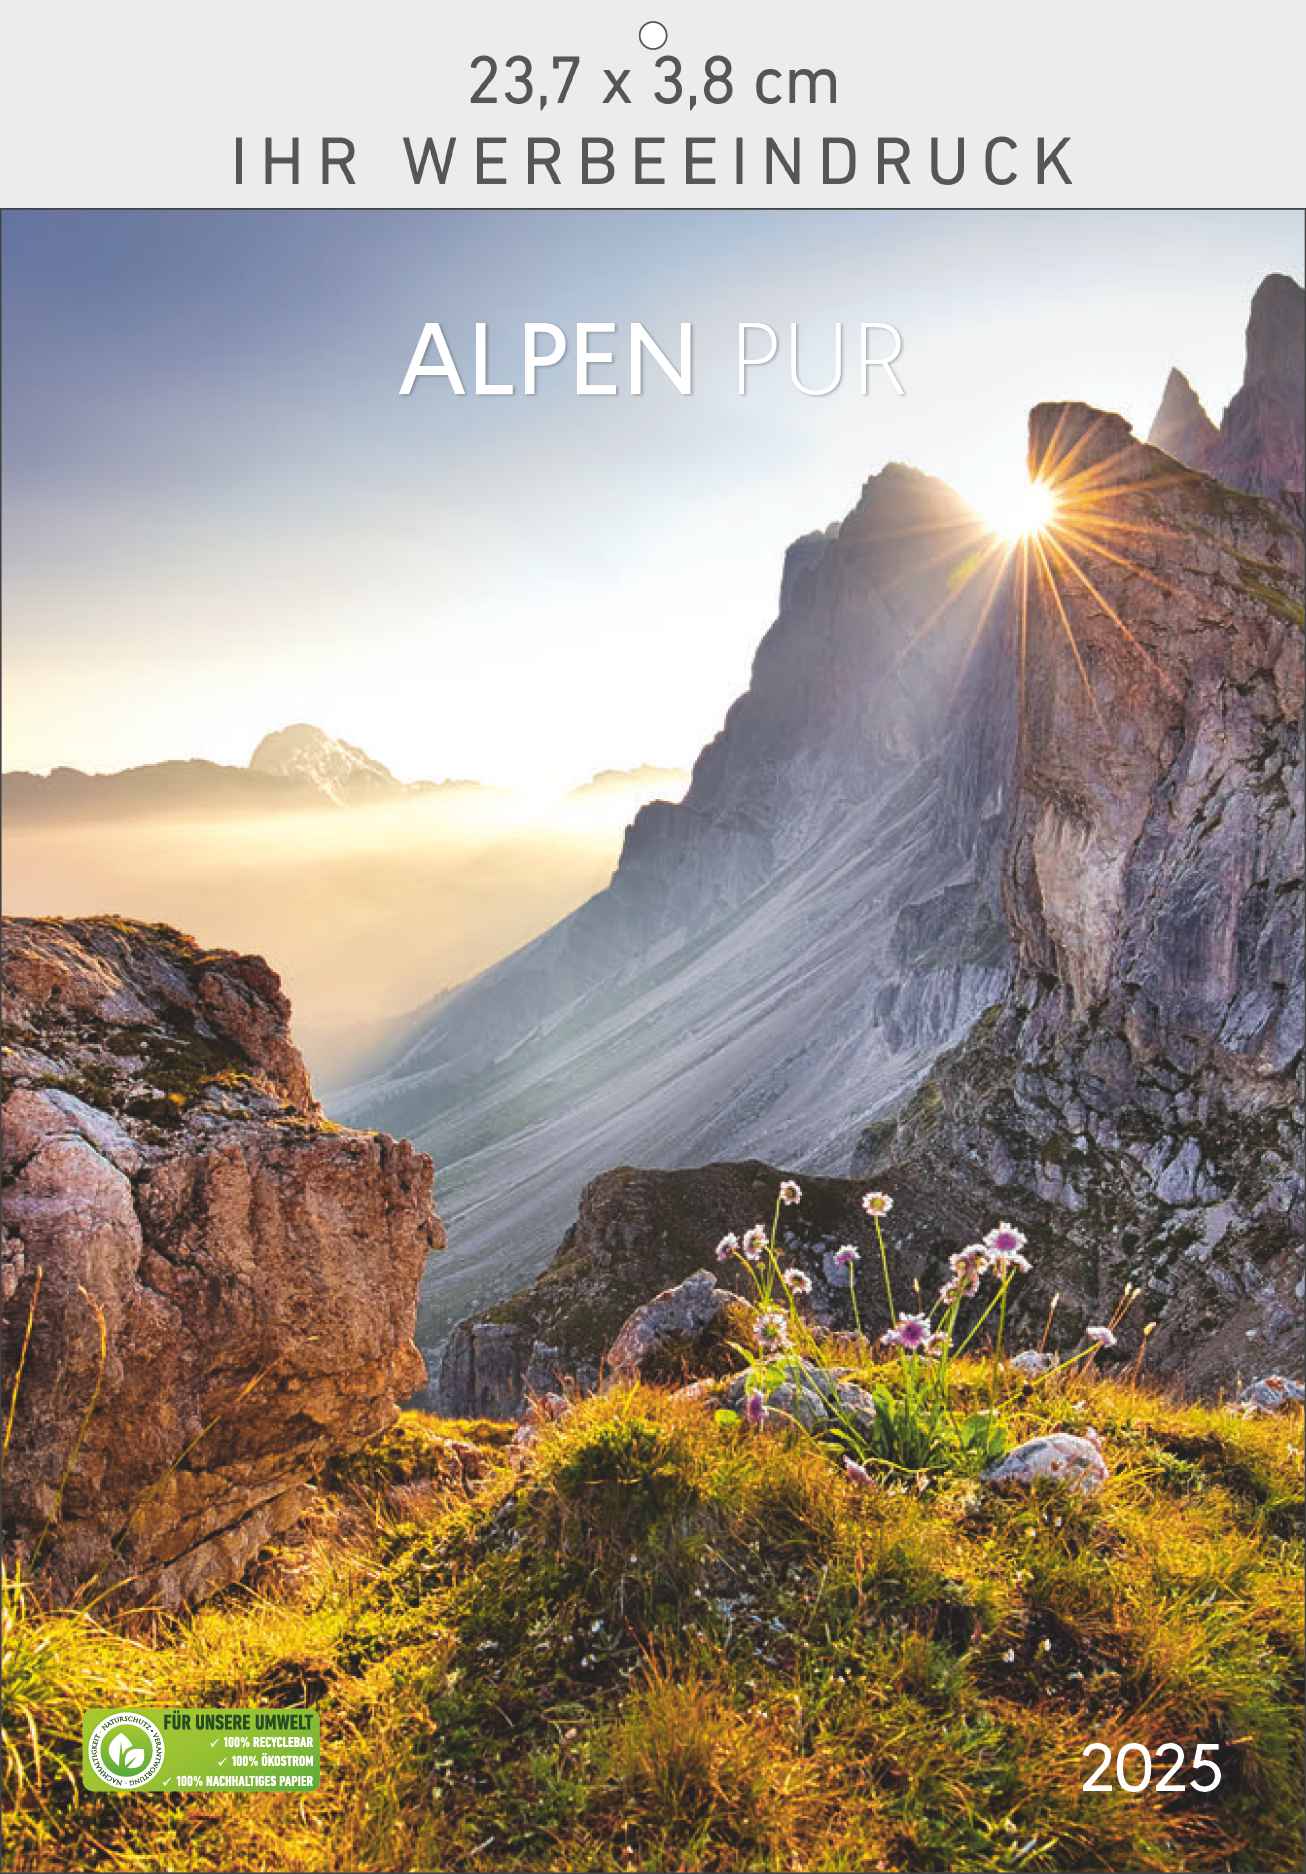 Alpen pur